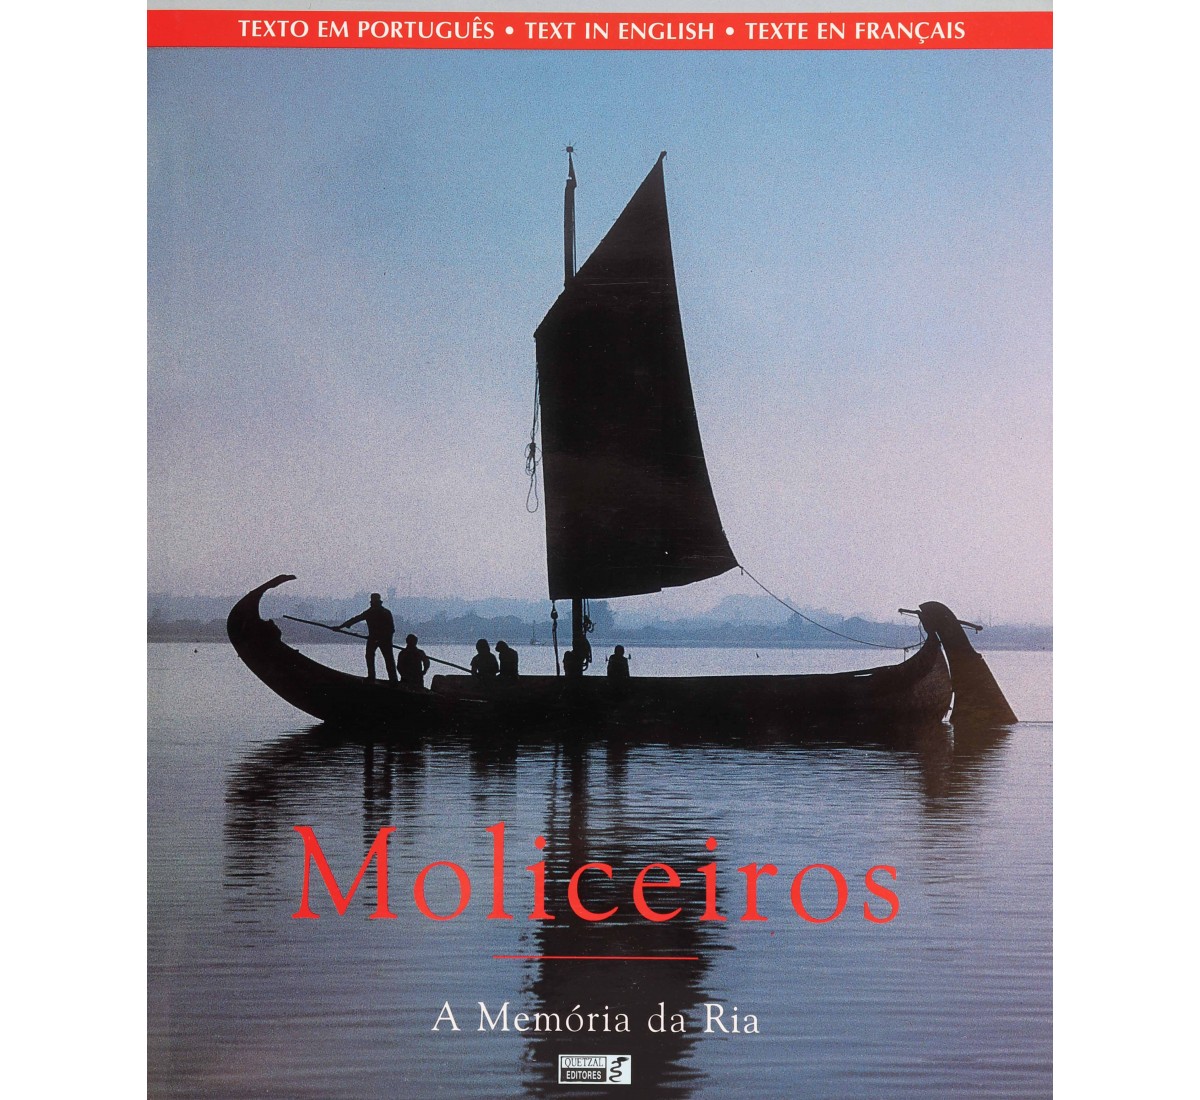 MOLICEIROS, A MEMÓRIA DA RIA